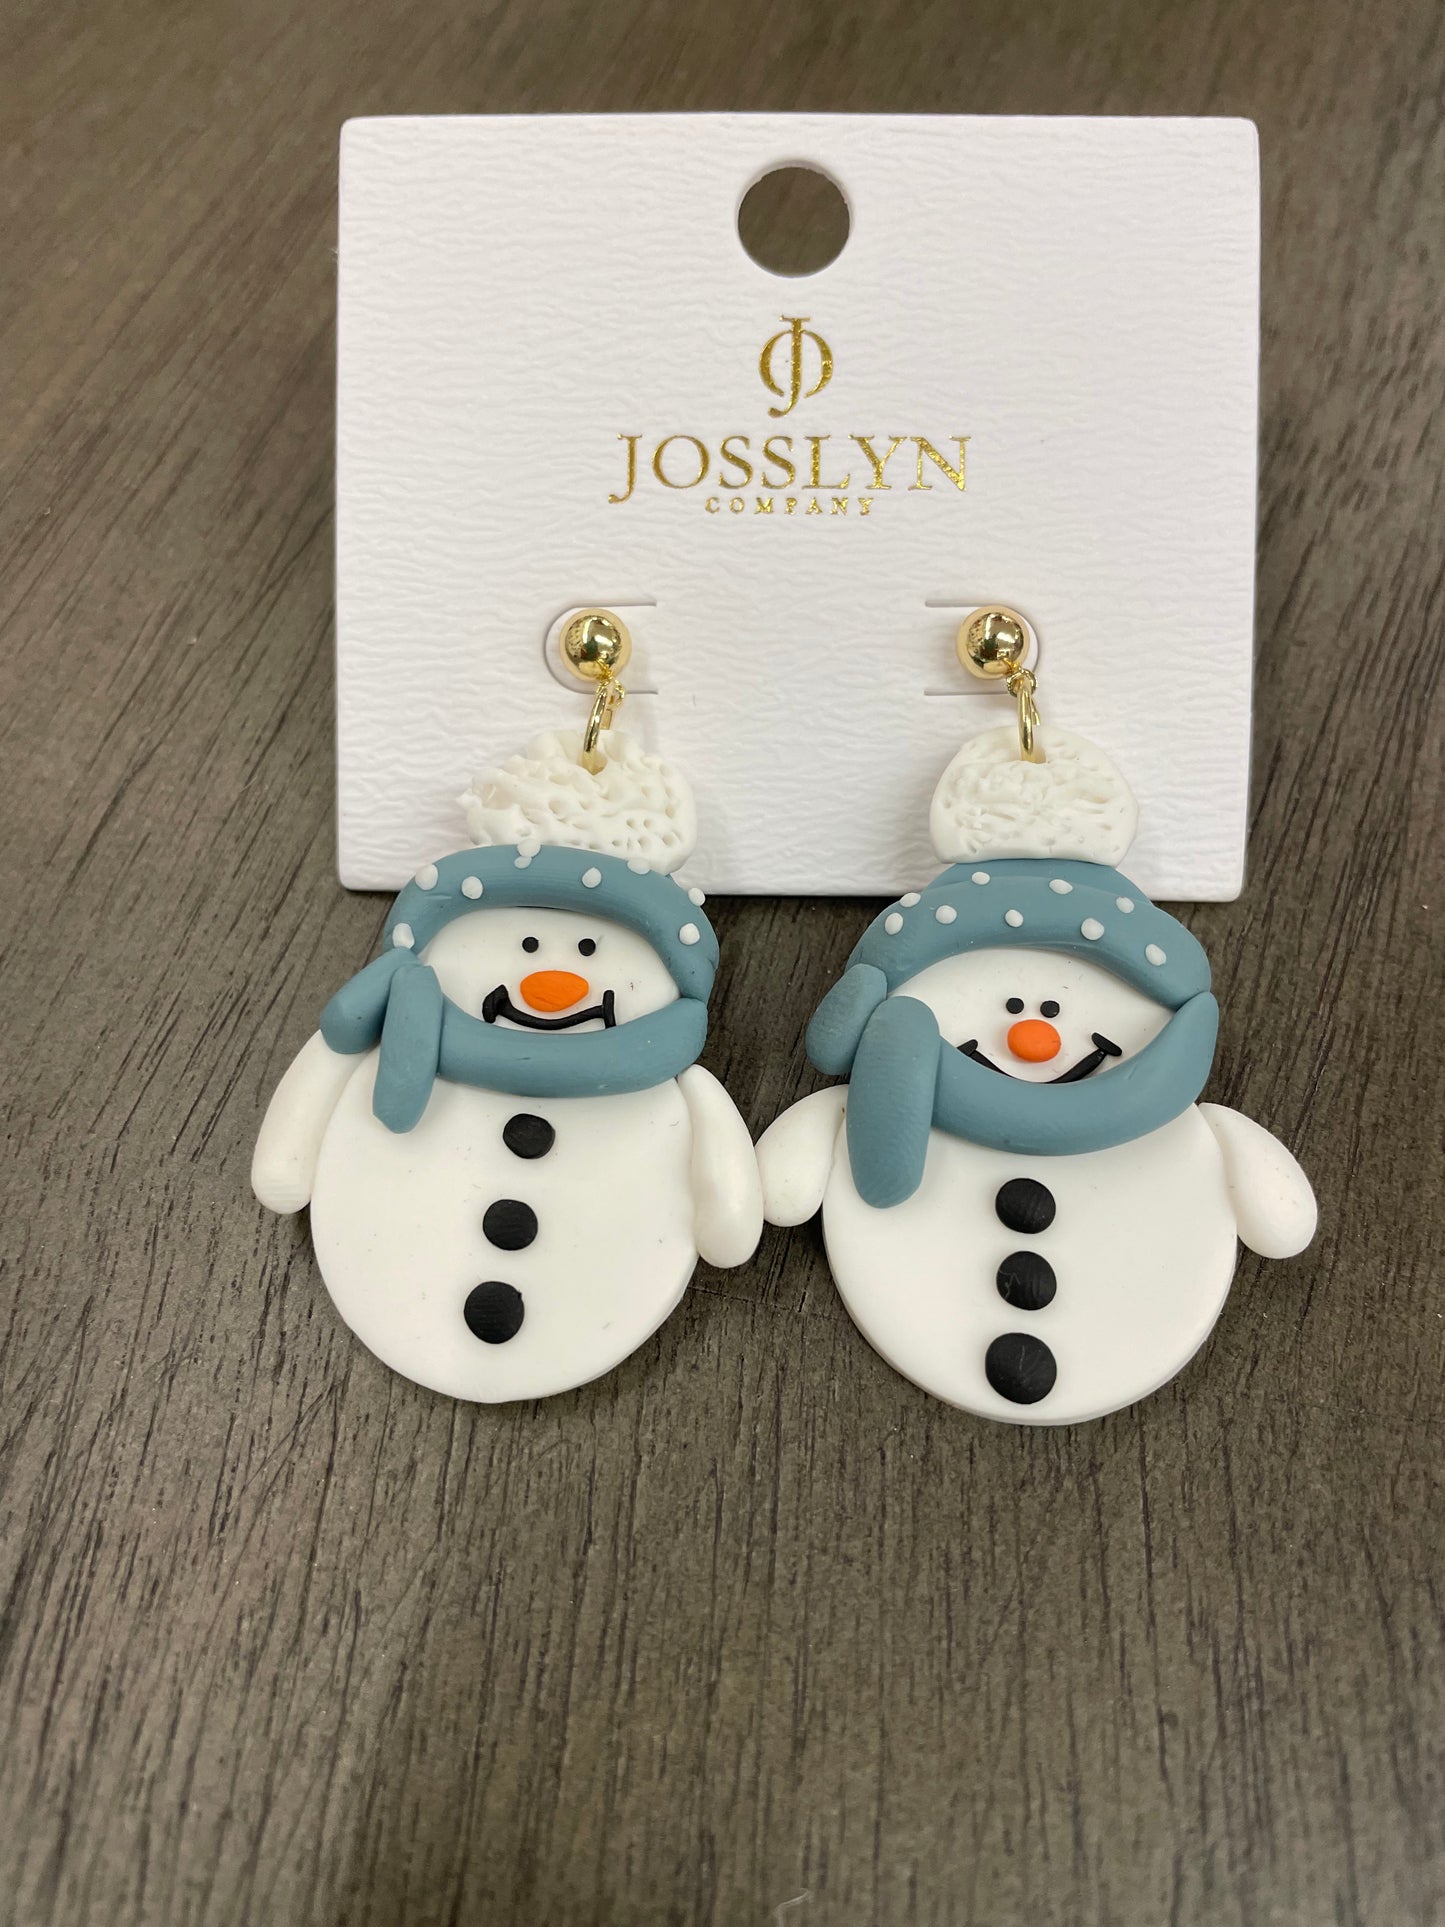 Josslyn Co. Holiday Earrings